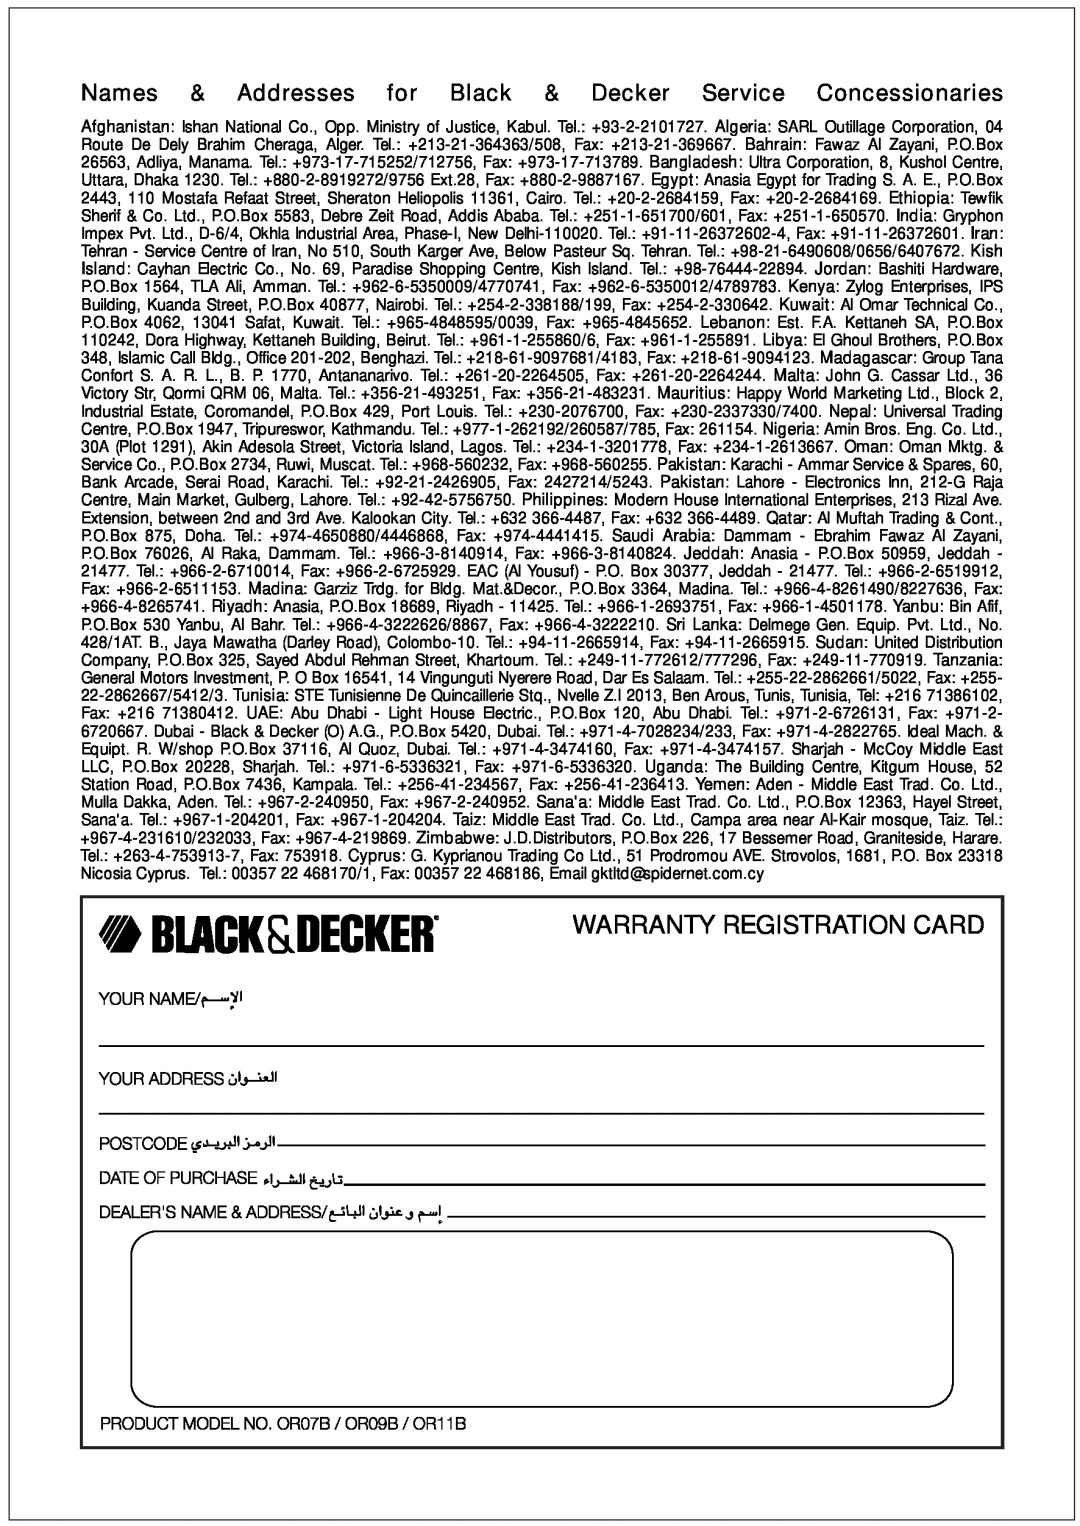 Black & Decker OR07B, OR11B, OR09B manual Warranty Registration Card 